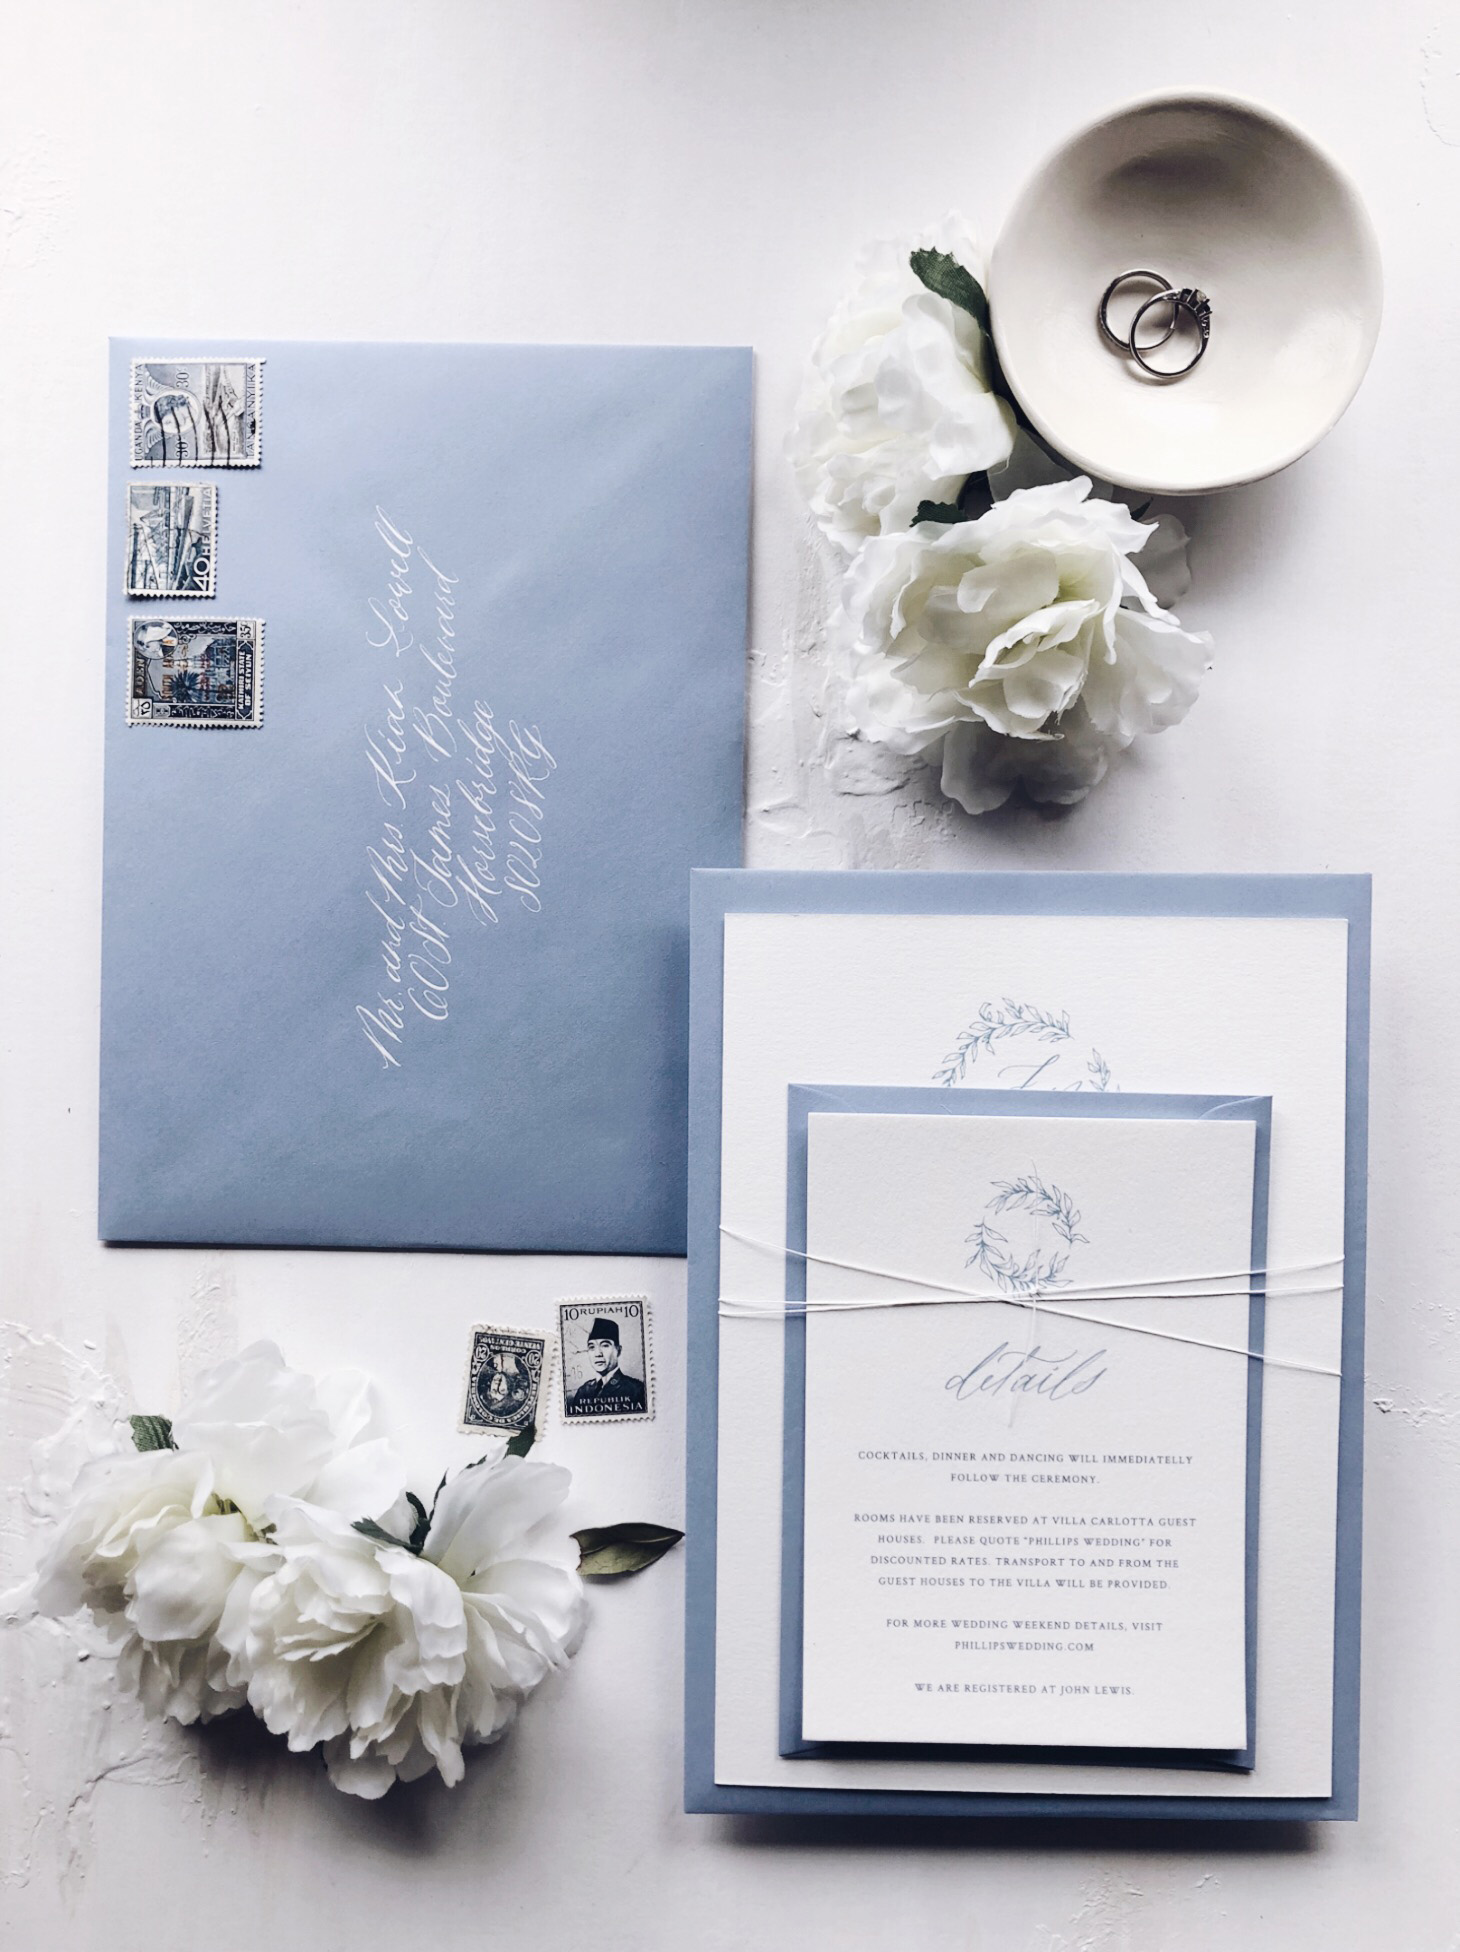 Wedding envelopes and personalised wedding stationery